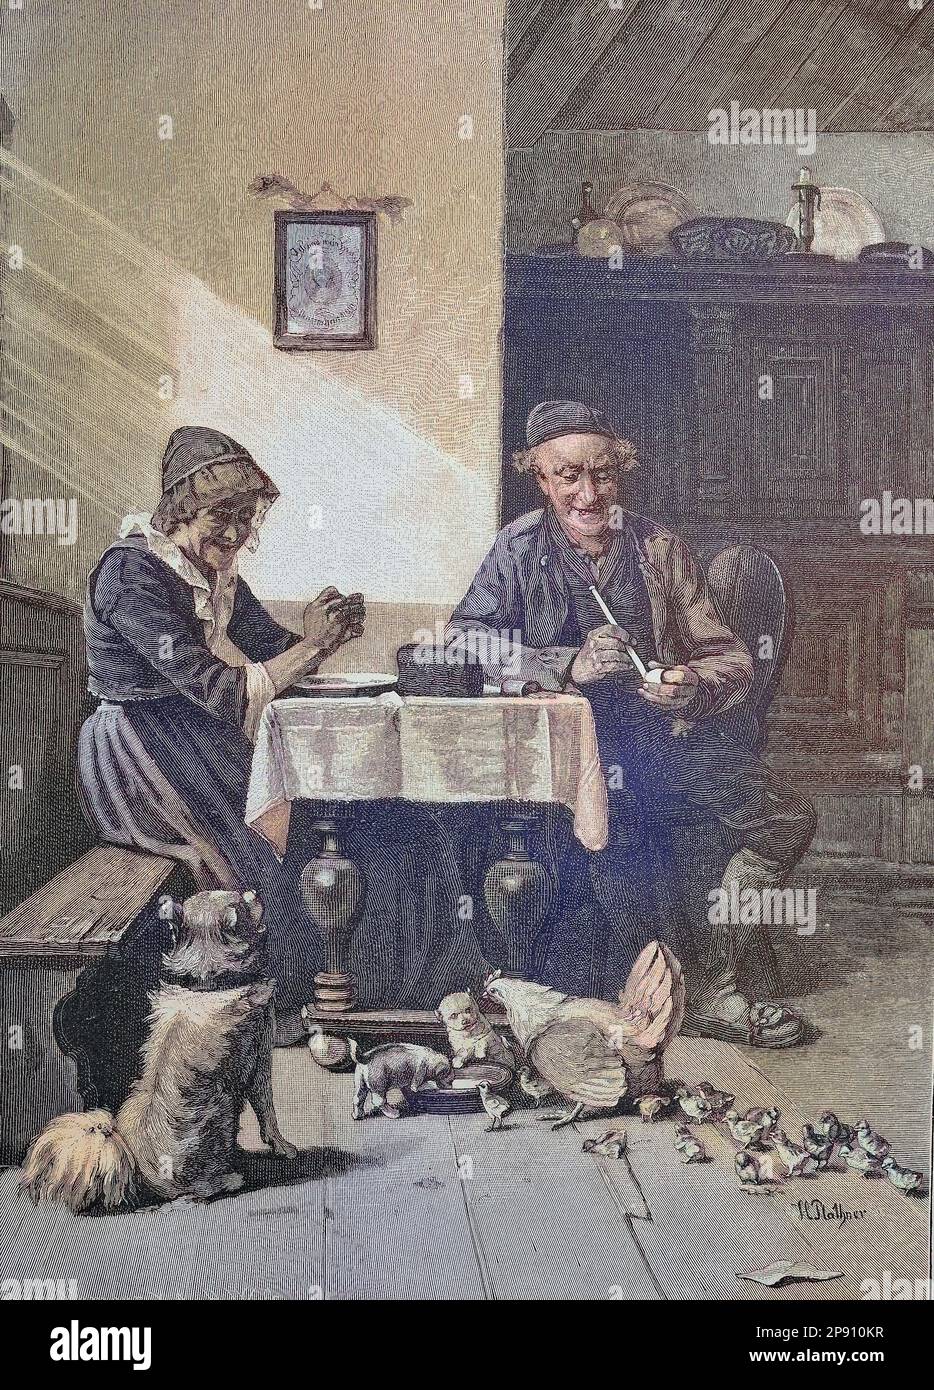 Fütterung, in der Wohnstube eines Bauernhofs, mit Hund, Hundewelpen, Hühnern und Küken bei der Fütterung, Historisch, digital restaurierte Reproduktion von einer Vorlage aus dem 19. Jahrhundert Stock Photo